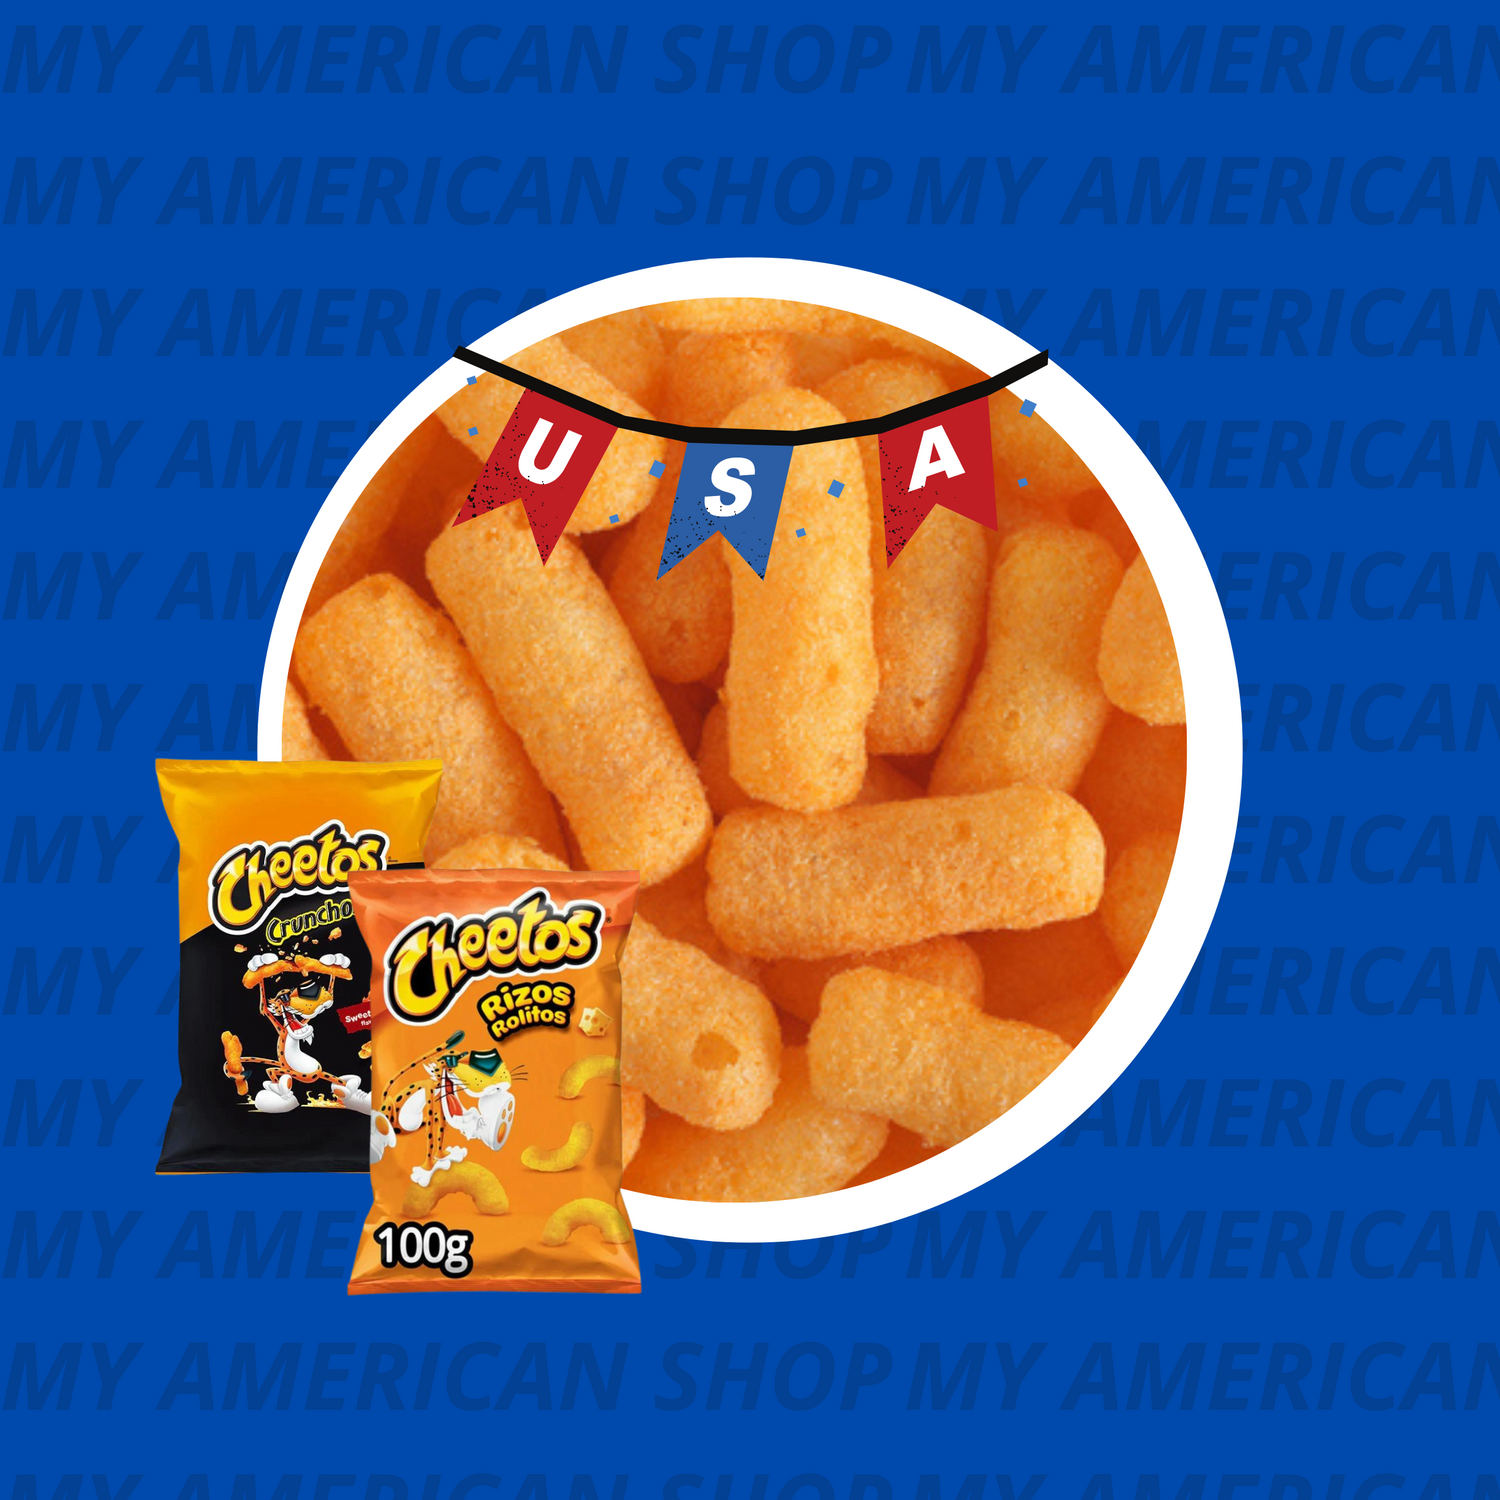 Il marchio di patatine più famoso d'America: Cheetos 🧀